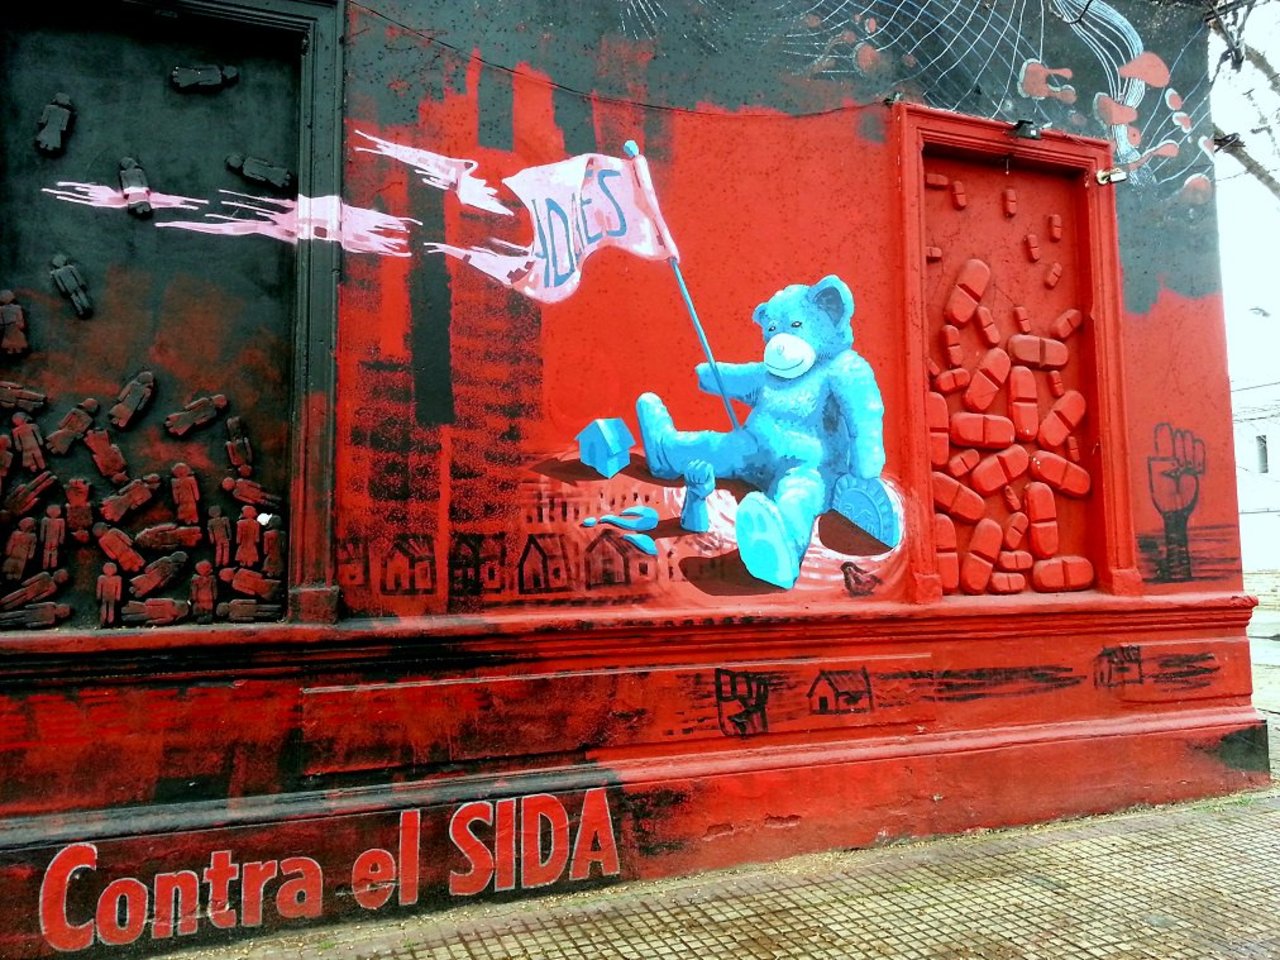 RT @DickieRandrup: #Graffiti de hoy: << Contra el Sida >> calles 40y117 #LaPlata #Argentina #StreetArt #UrbanArt #ArteUrbano https://t.co/uAR28yb3PI